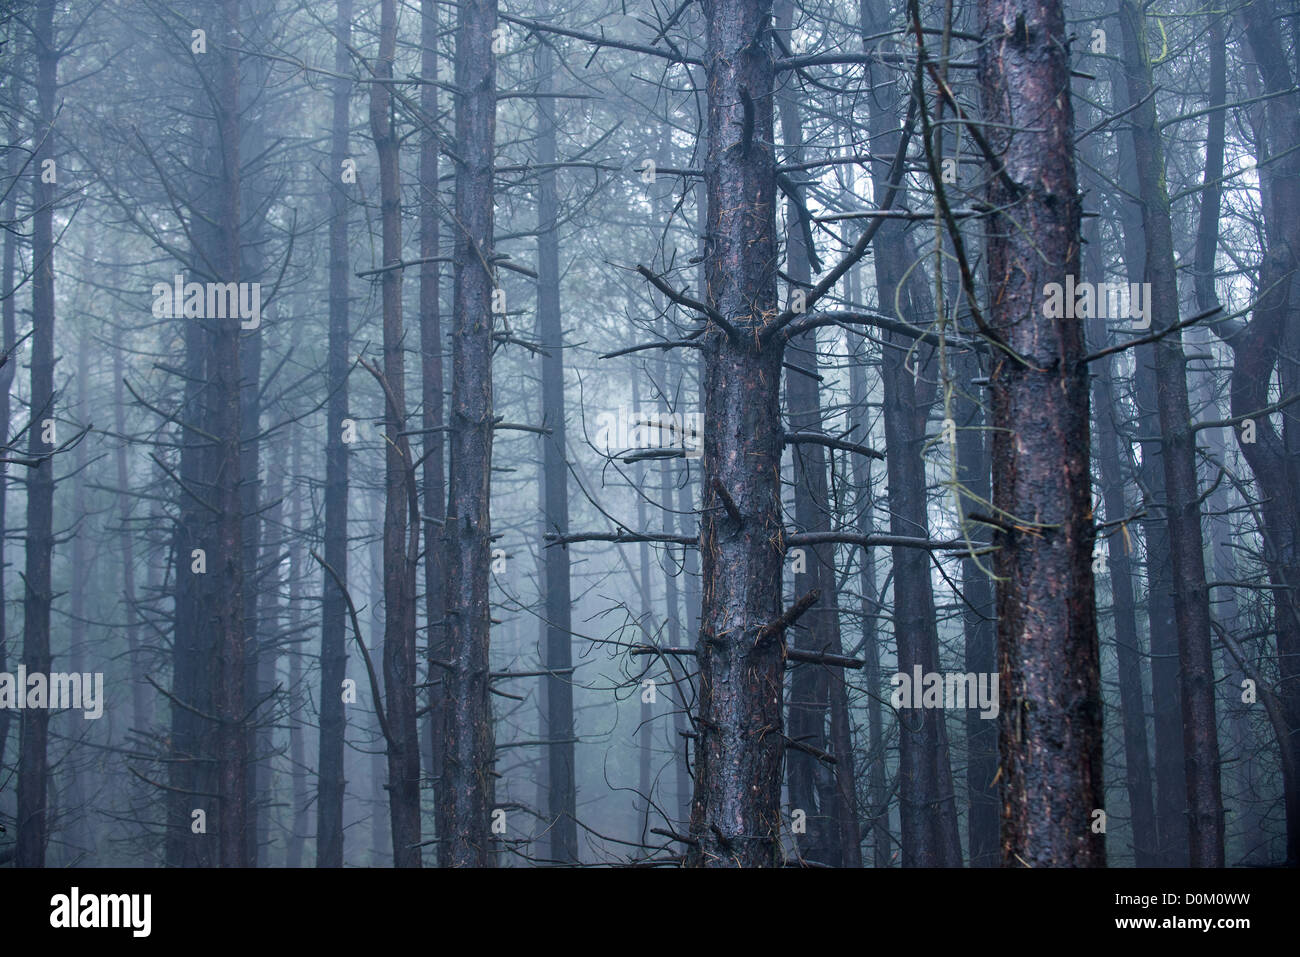 Reife Nadelbaum Wälder eingehüllt in nassen nebligen Bedingungen Stockfoto